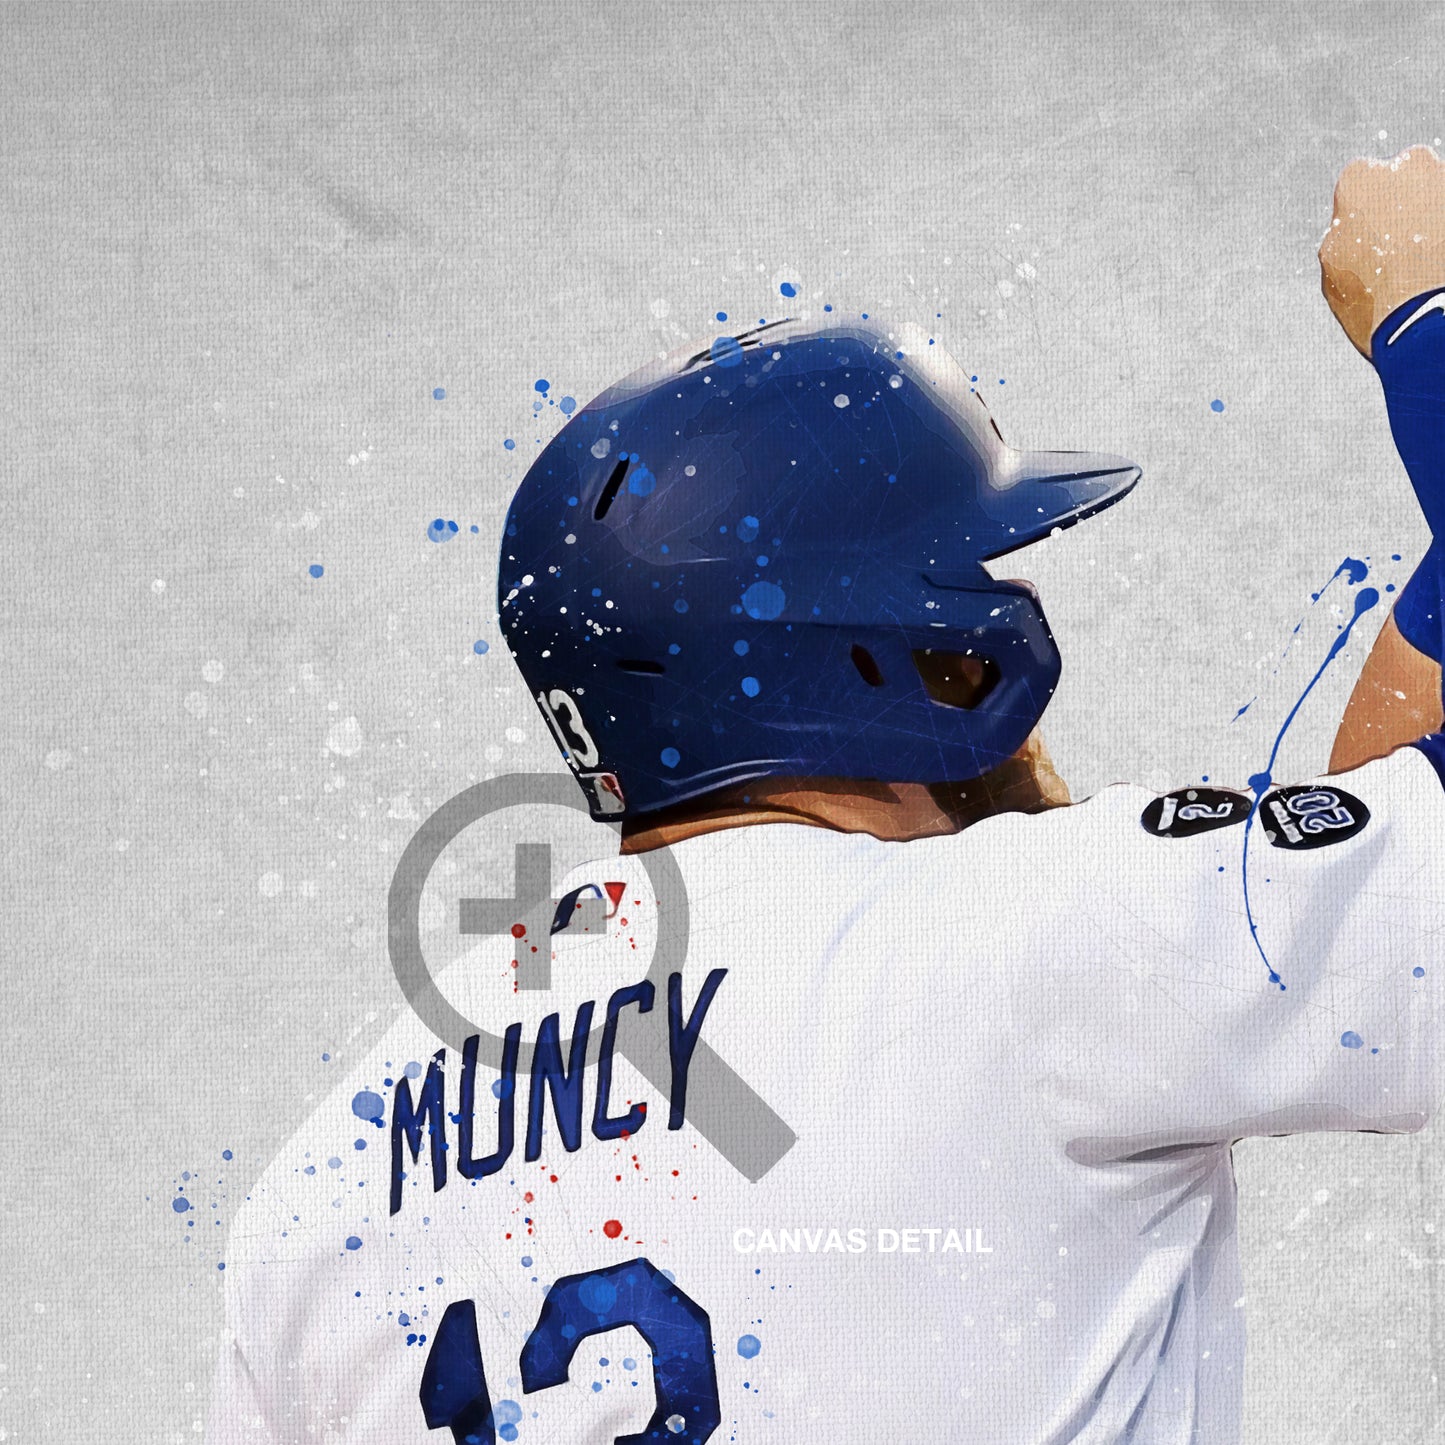 Mike Muncy & Cody Belinger Baseball Print, MLB Wall Decor